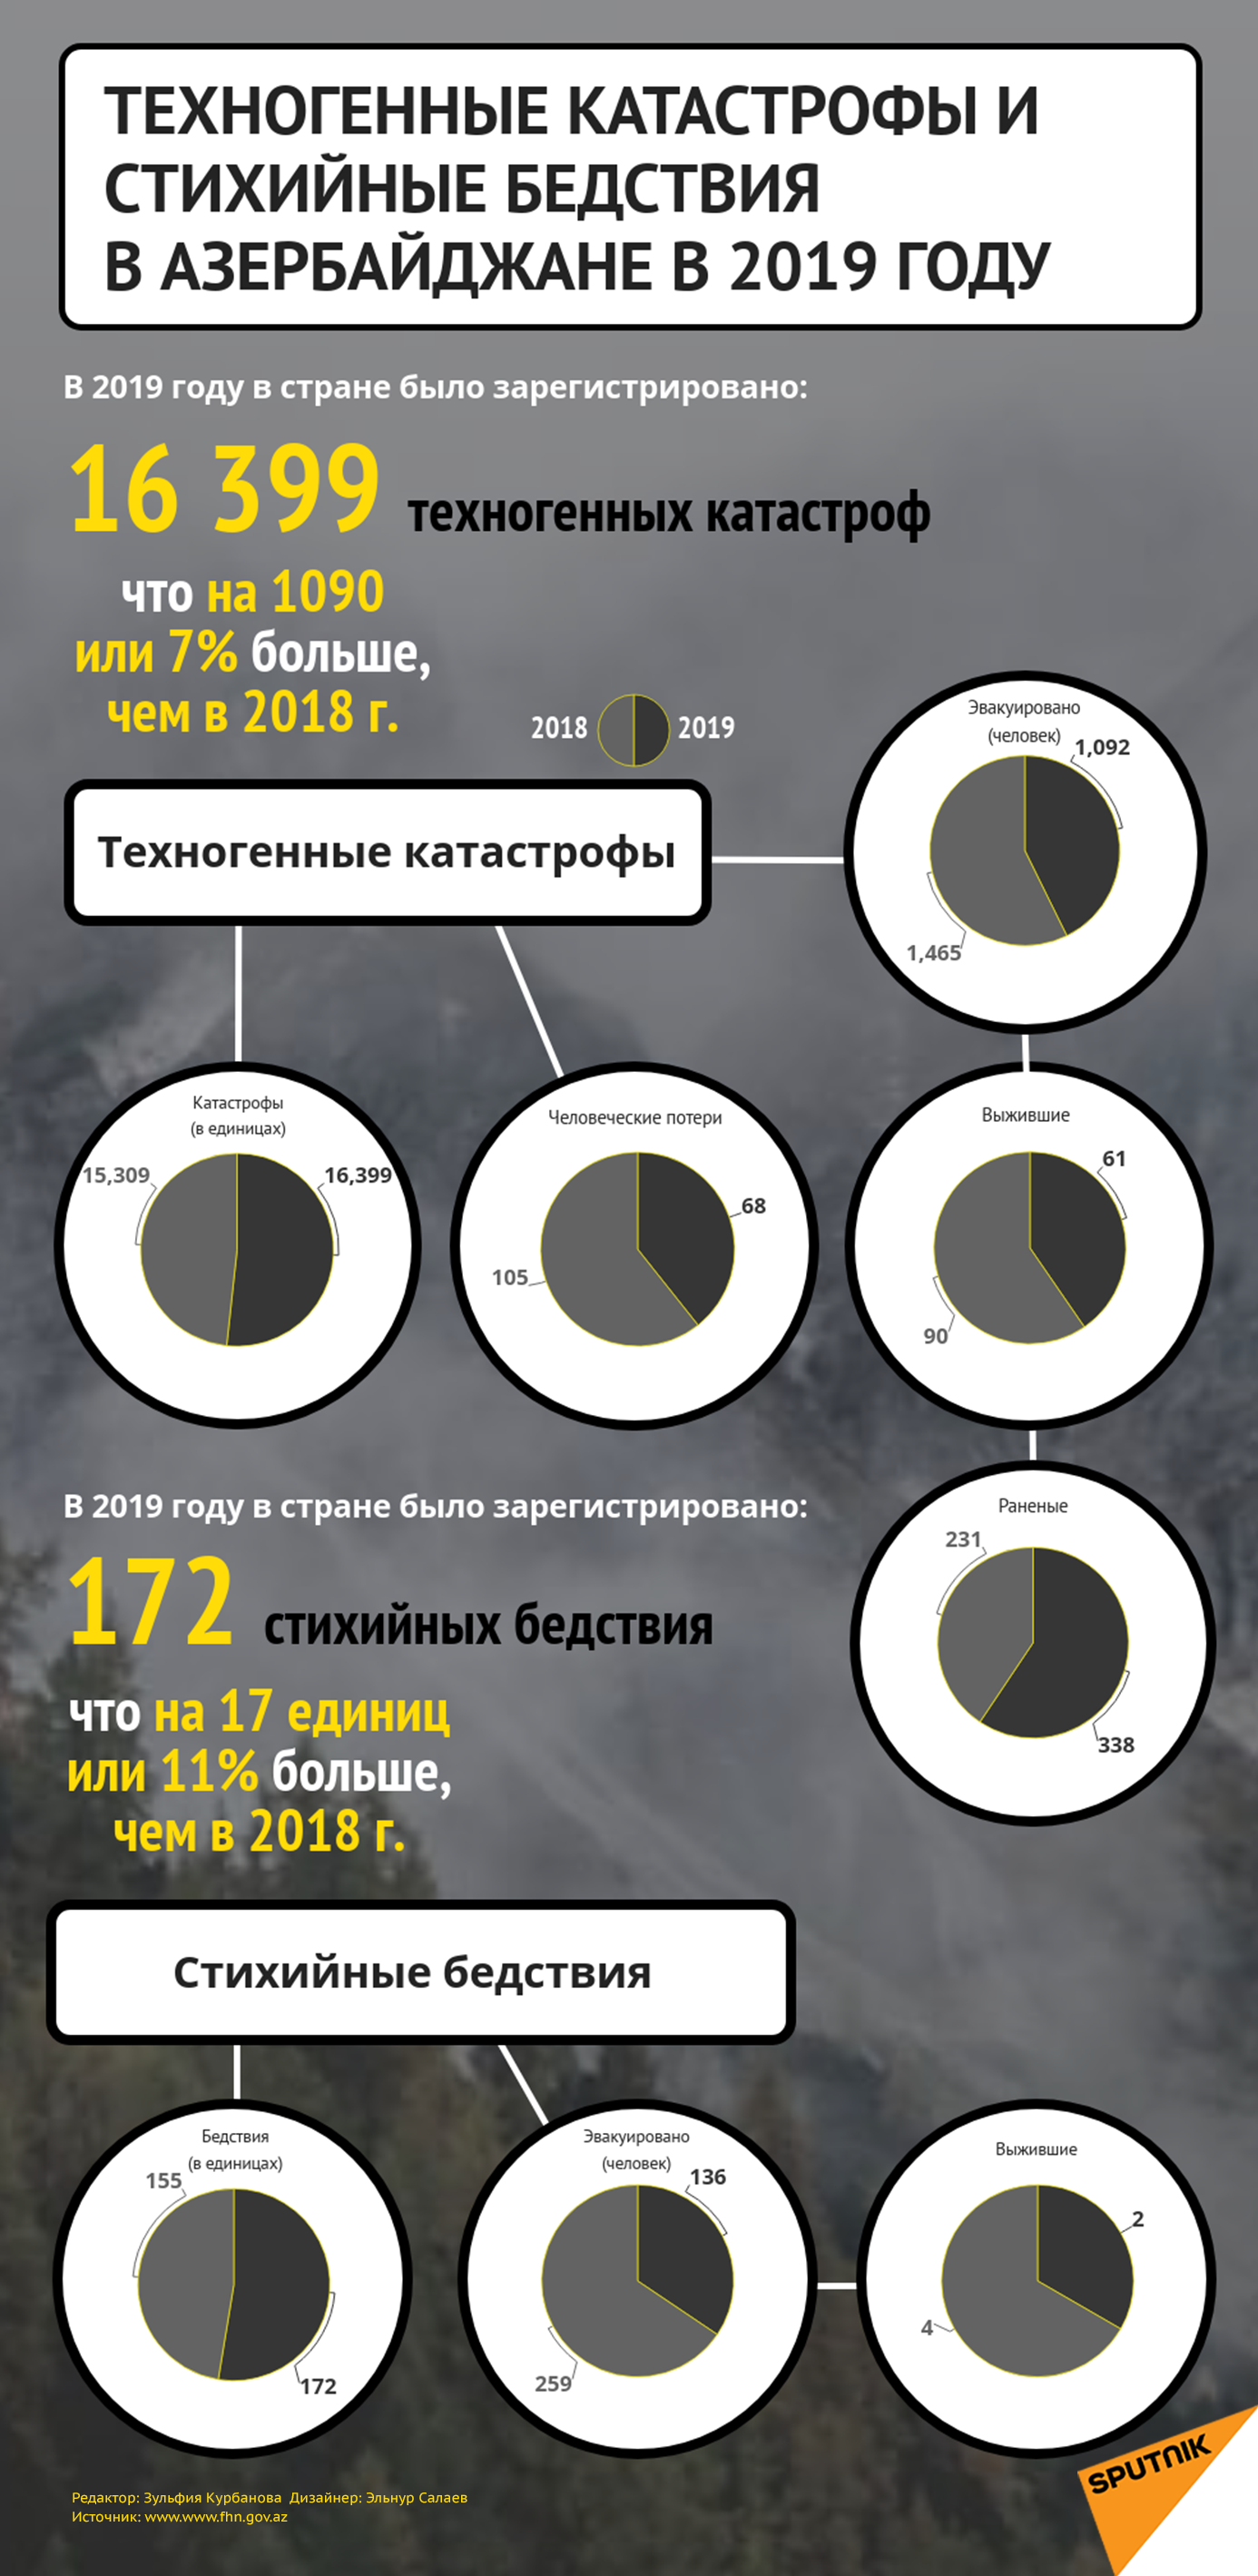 Инфографика: Техногенные катастрофы в Азербайджане в 2019 году - Sputnik Азербайджан